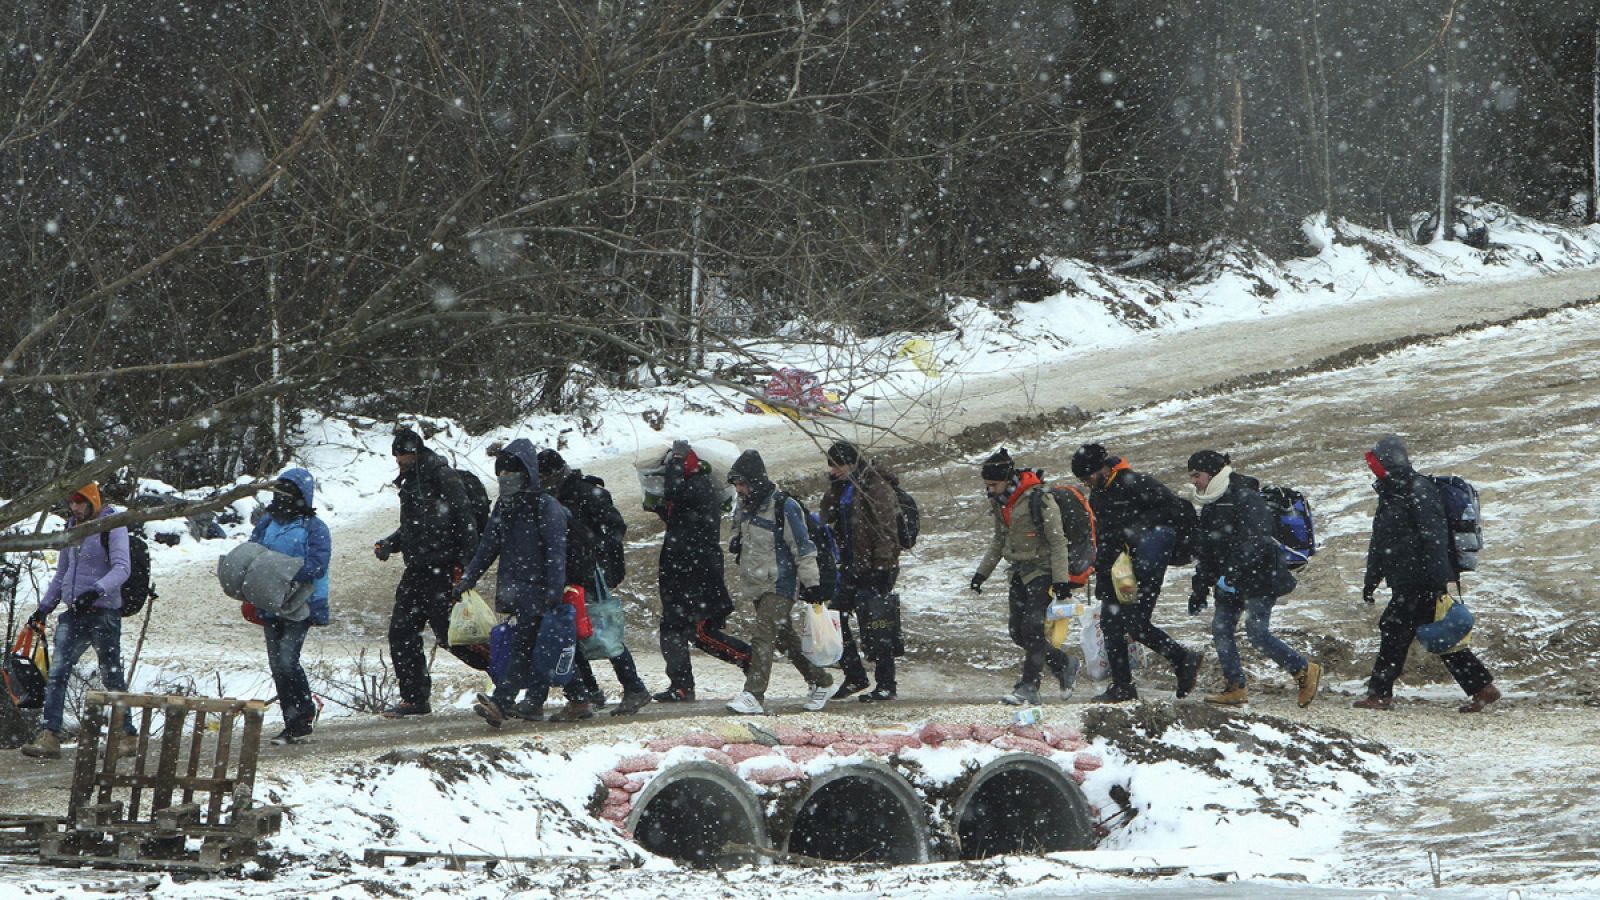 Refugiados de Siria, Irak y Afganistán caminan hacia un campamento temporal para inmigrantes en el pueblo de Miratovac, Serbia